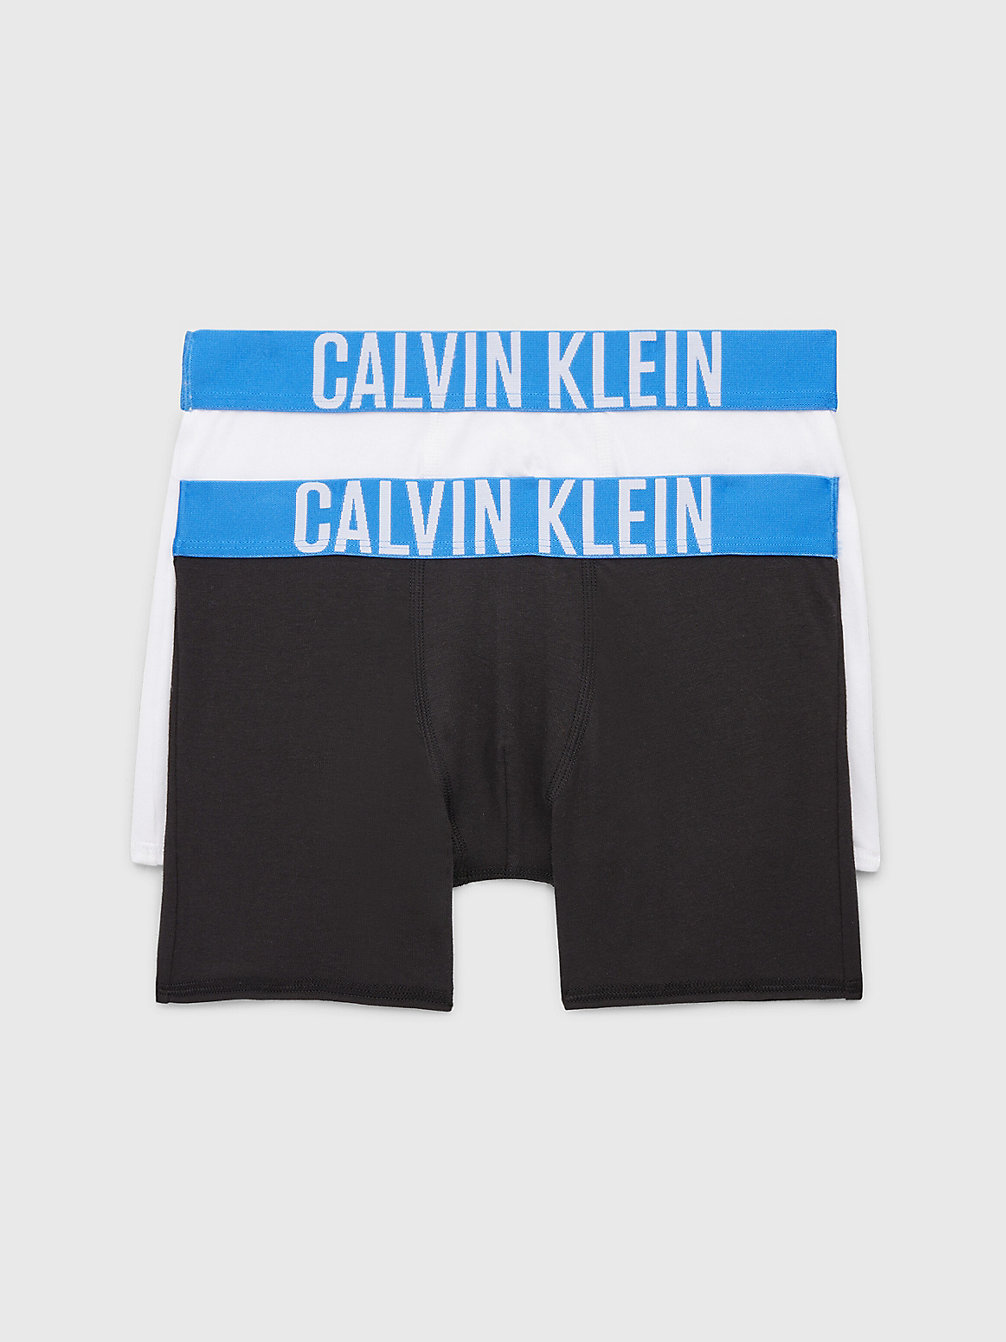 PVHBLACK/PVHWHITE > 2er-Pack Boxershorts Für Jungen - Intense Power > undefined Jungen - Calvin Klein